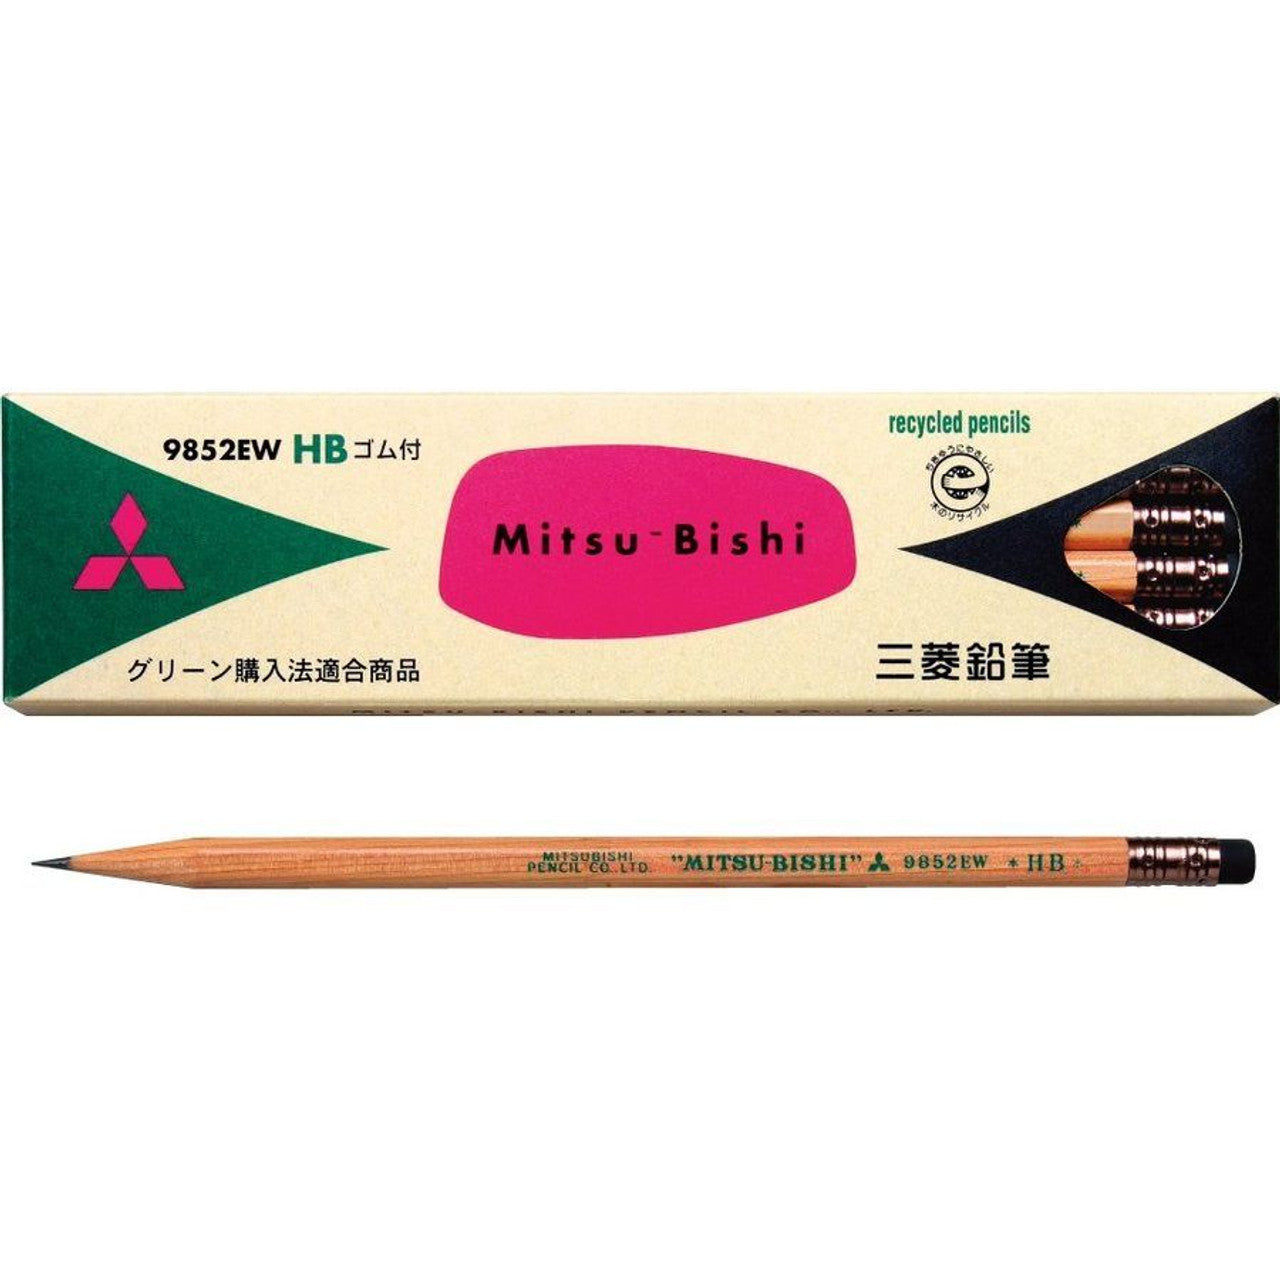 Mitsubishi Pencils (Beige Box)